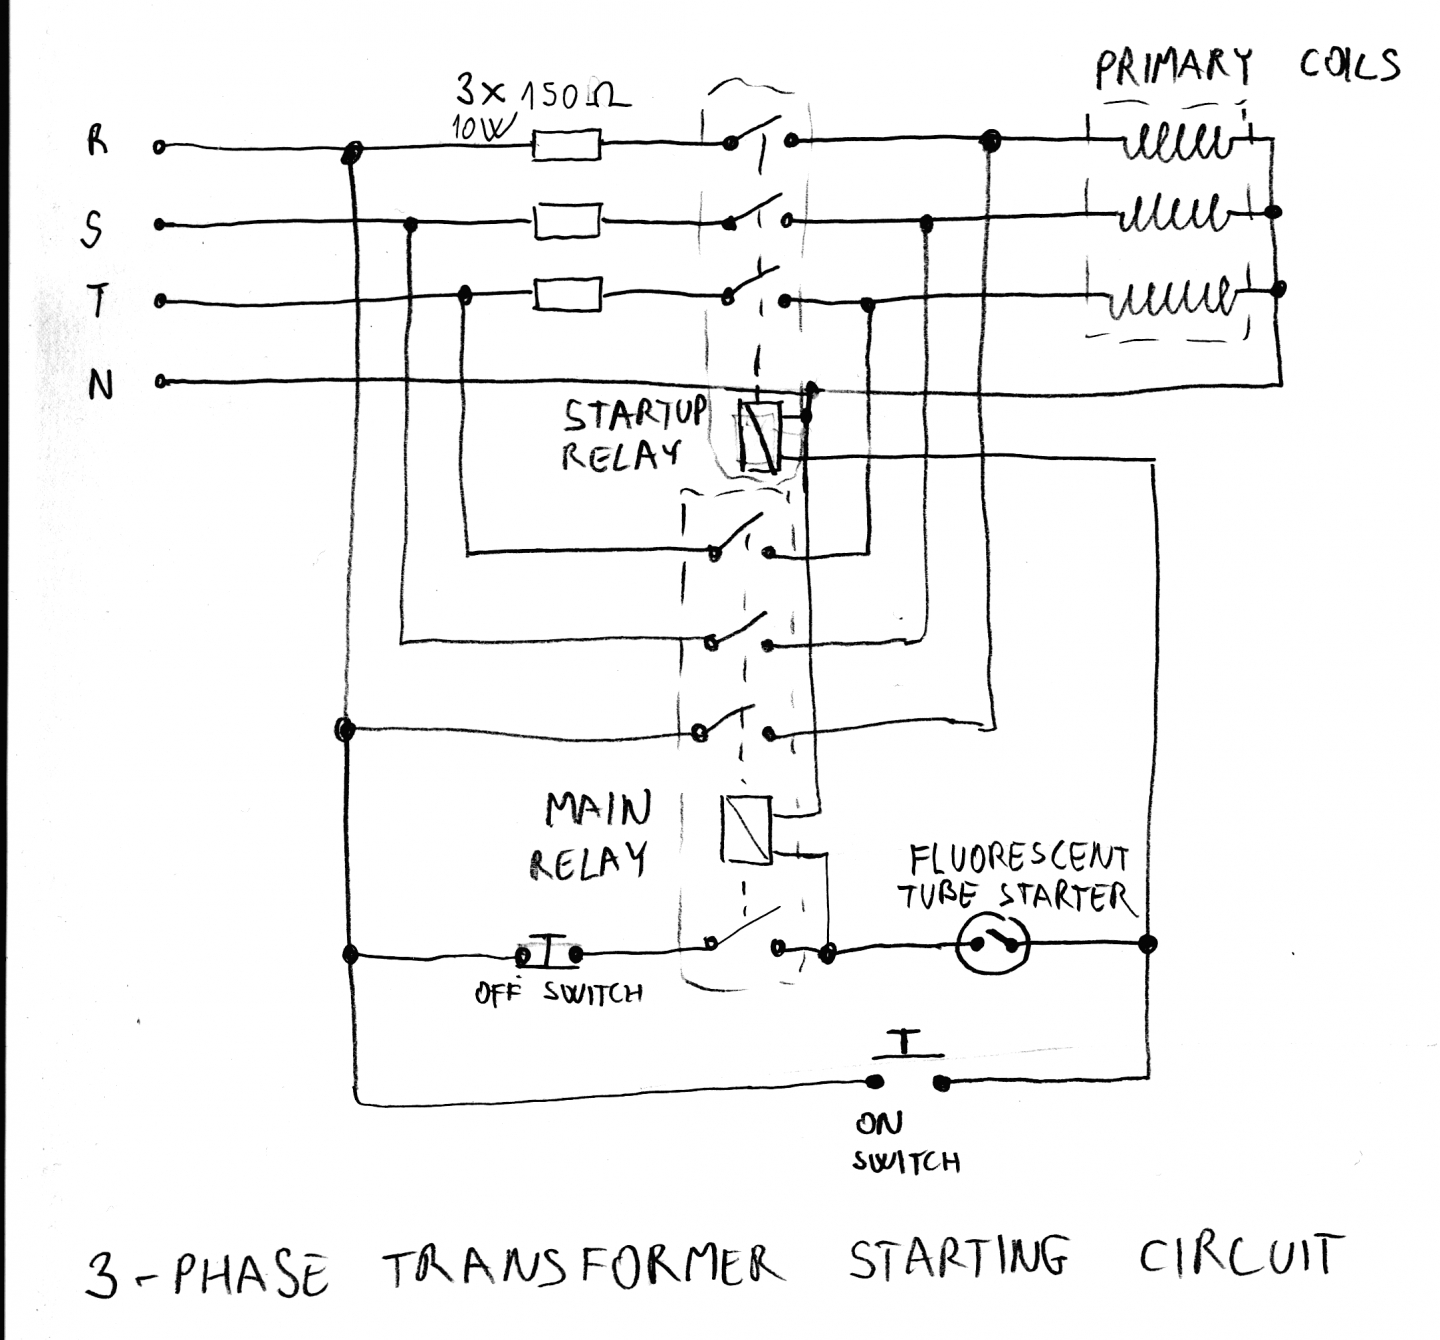 480V Transformer Wiring Diagram 12V | Manual E-Books - 480V To 120V Transformer Wiring Diagram